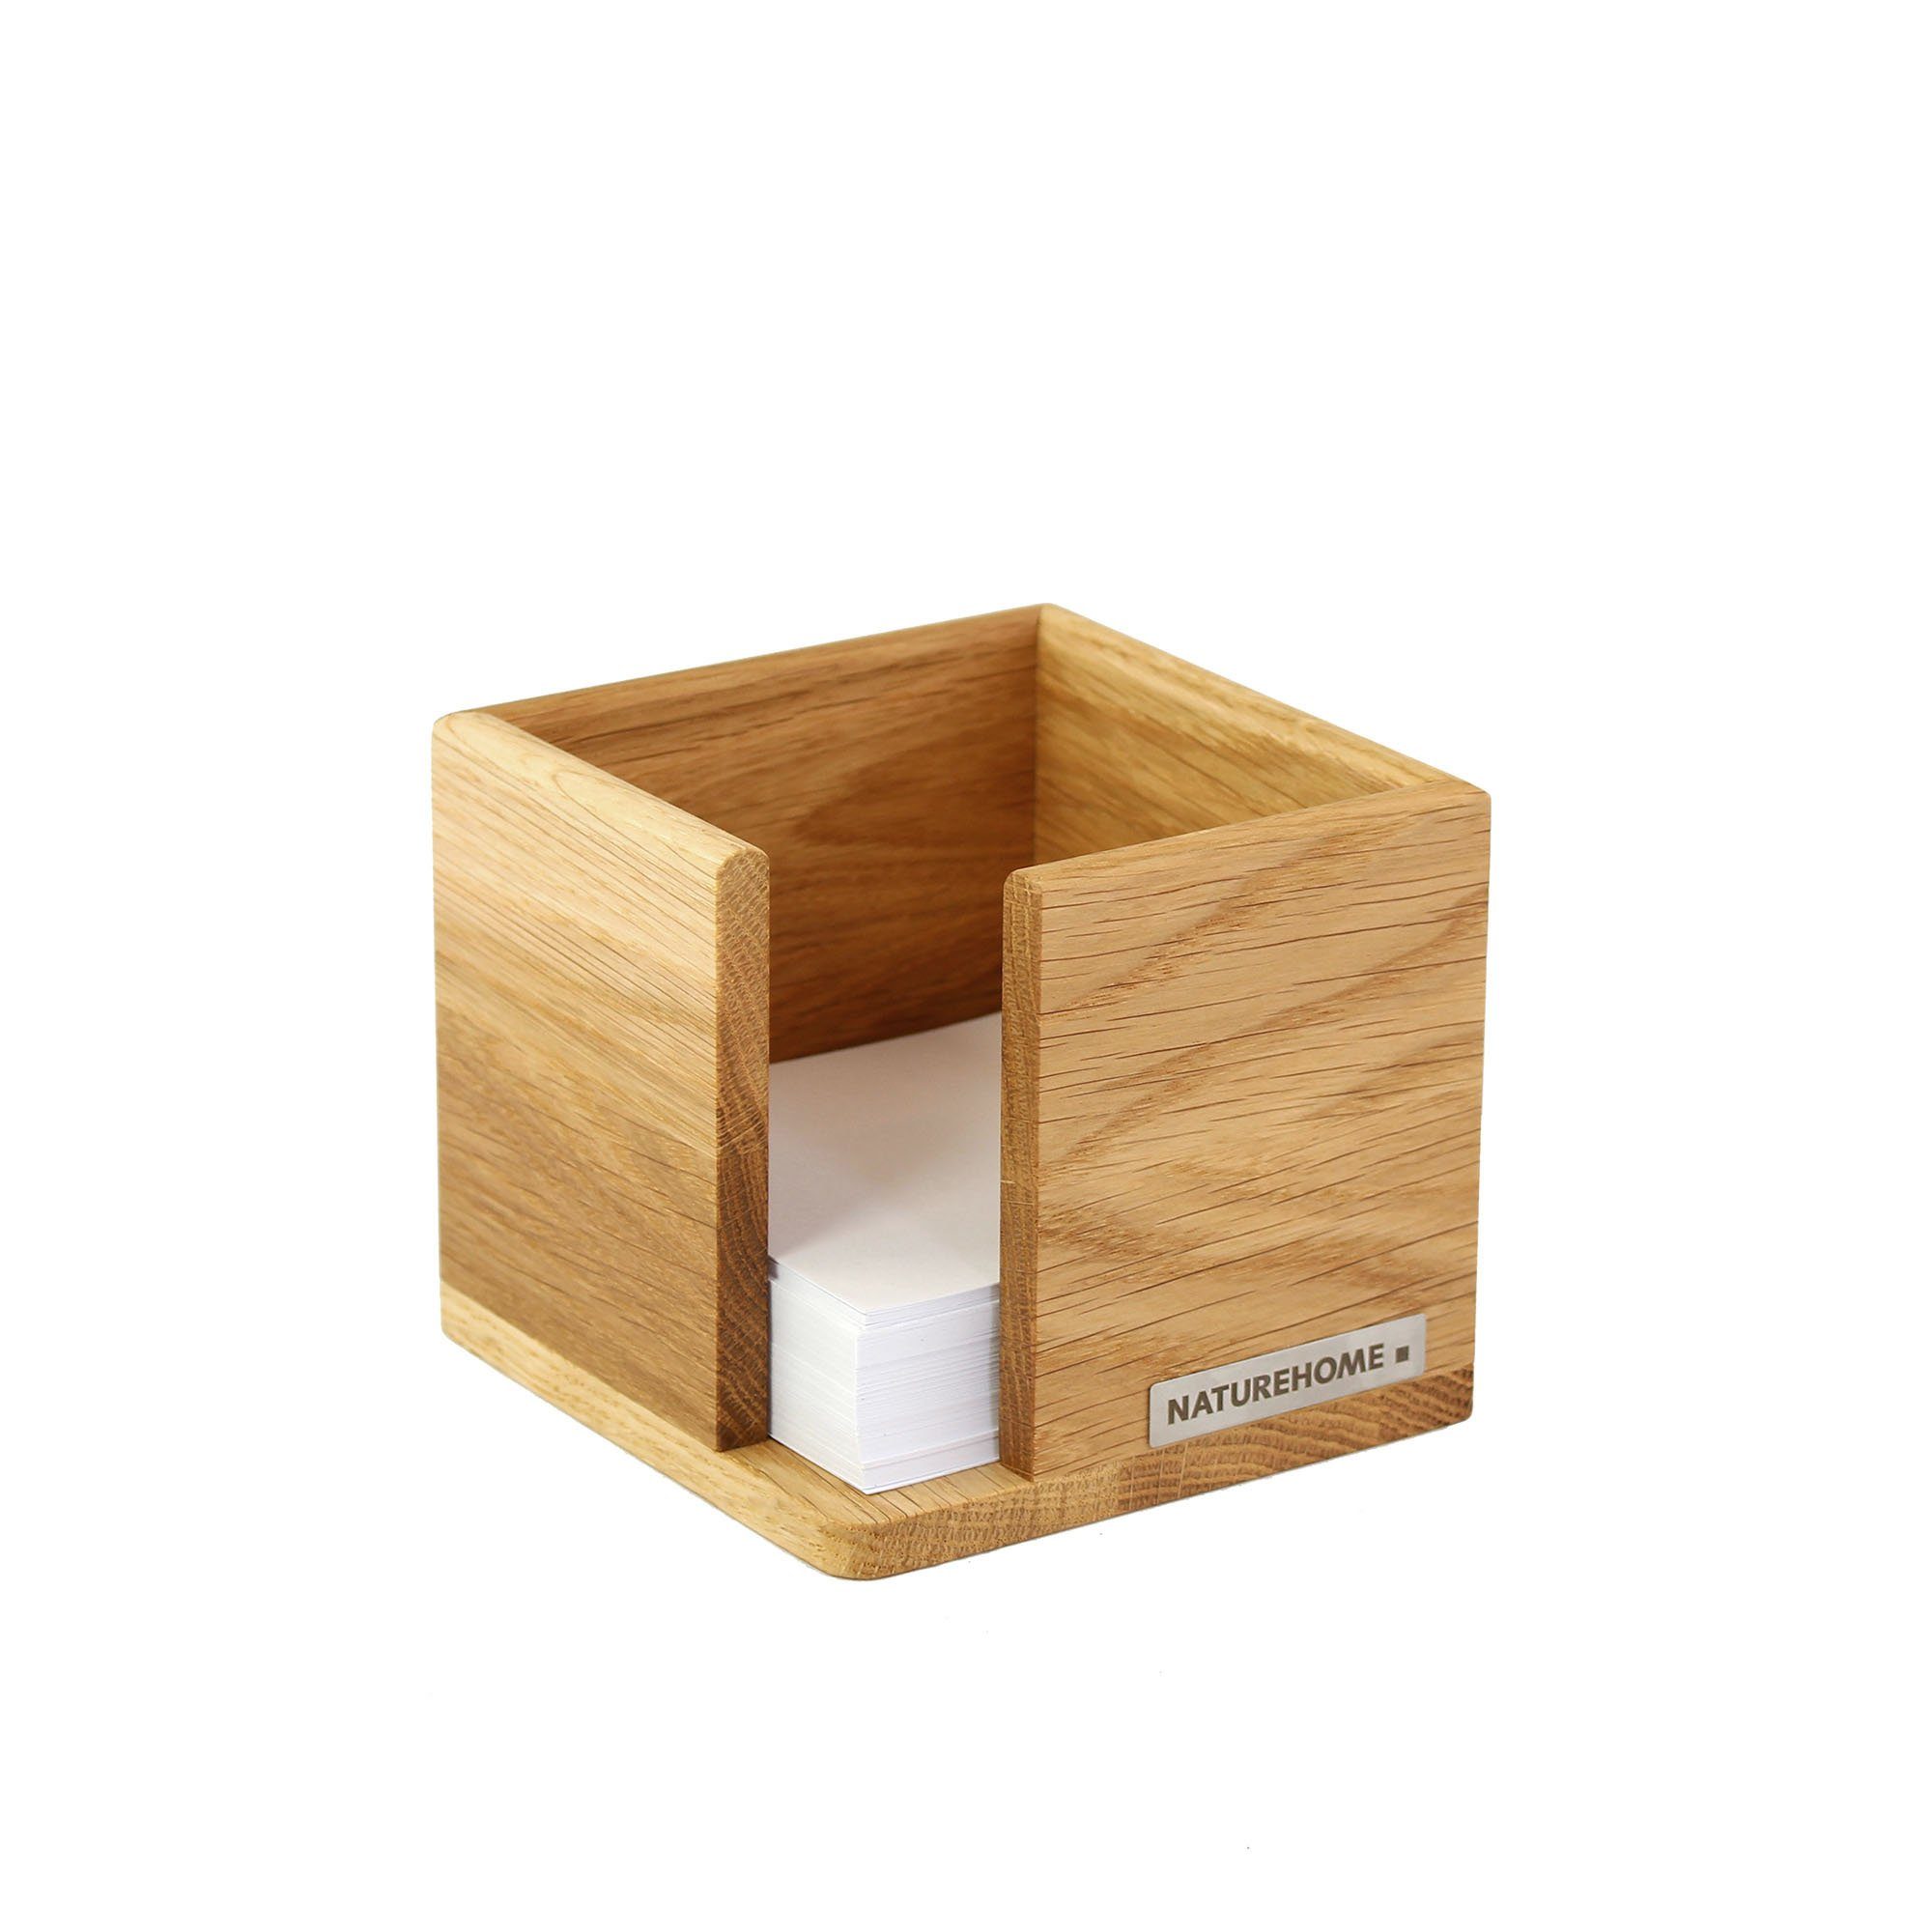 NATUREHOME Zettelkasten CLASSIC Zettelbox 11,5 x 11,5 x 9,5 cm